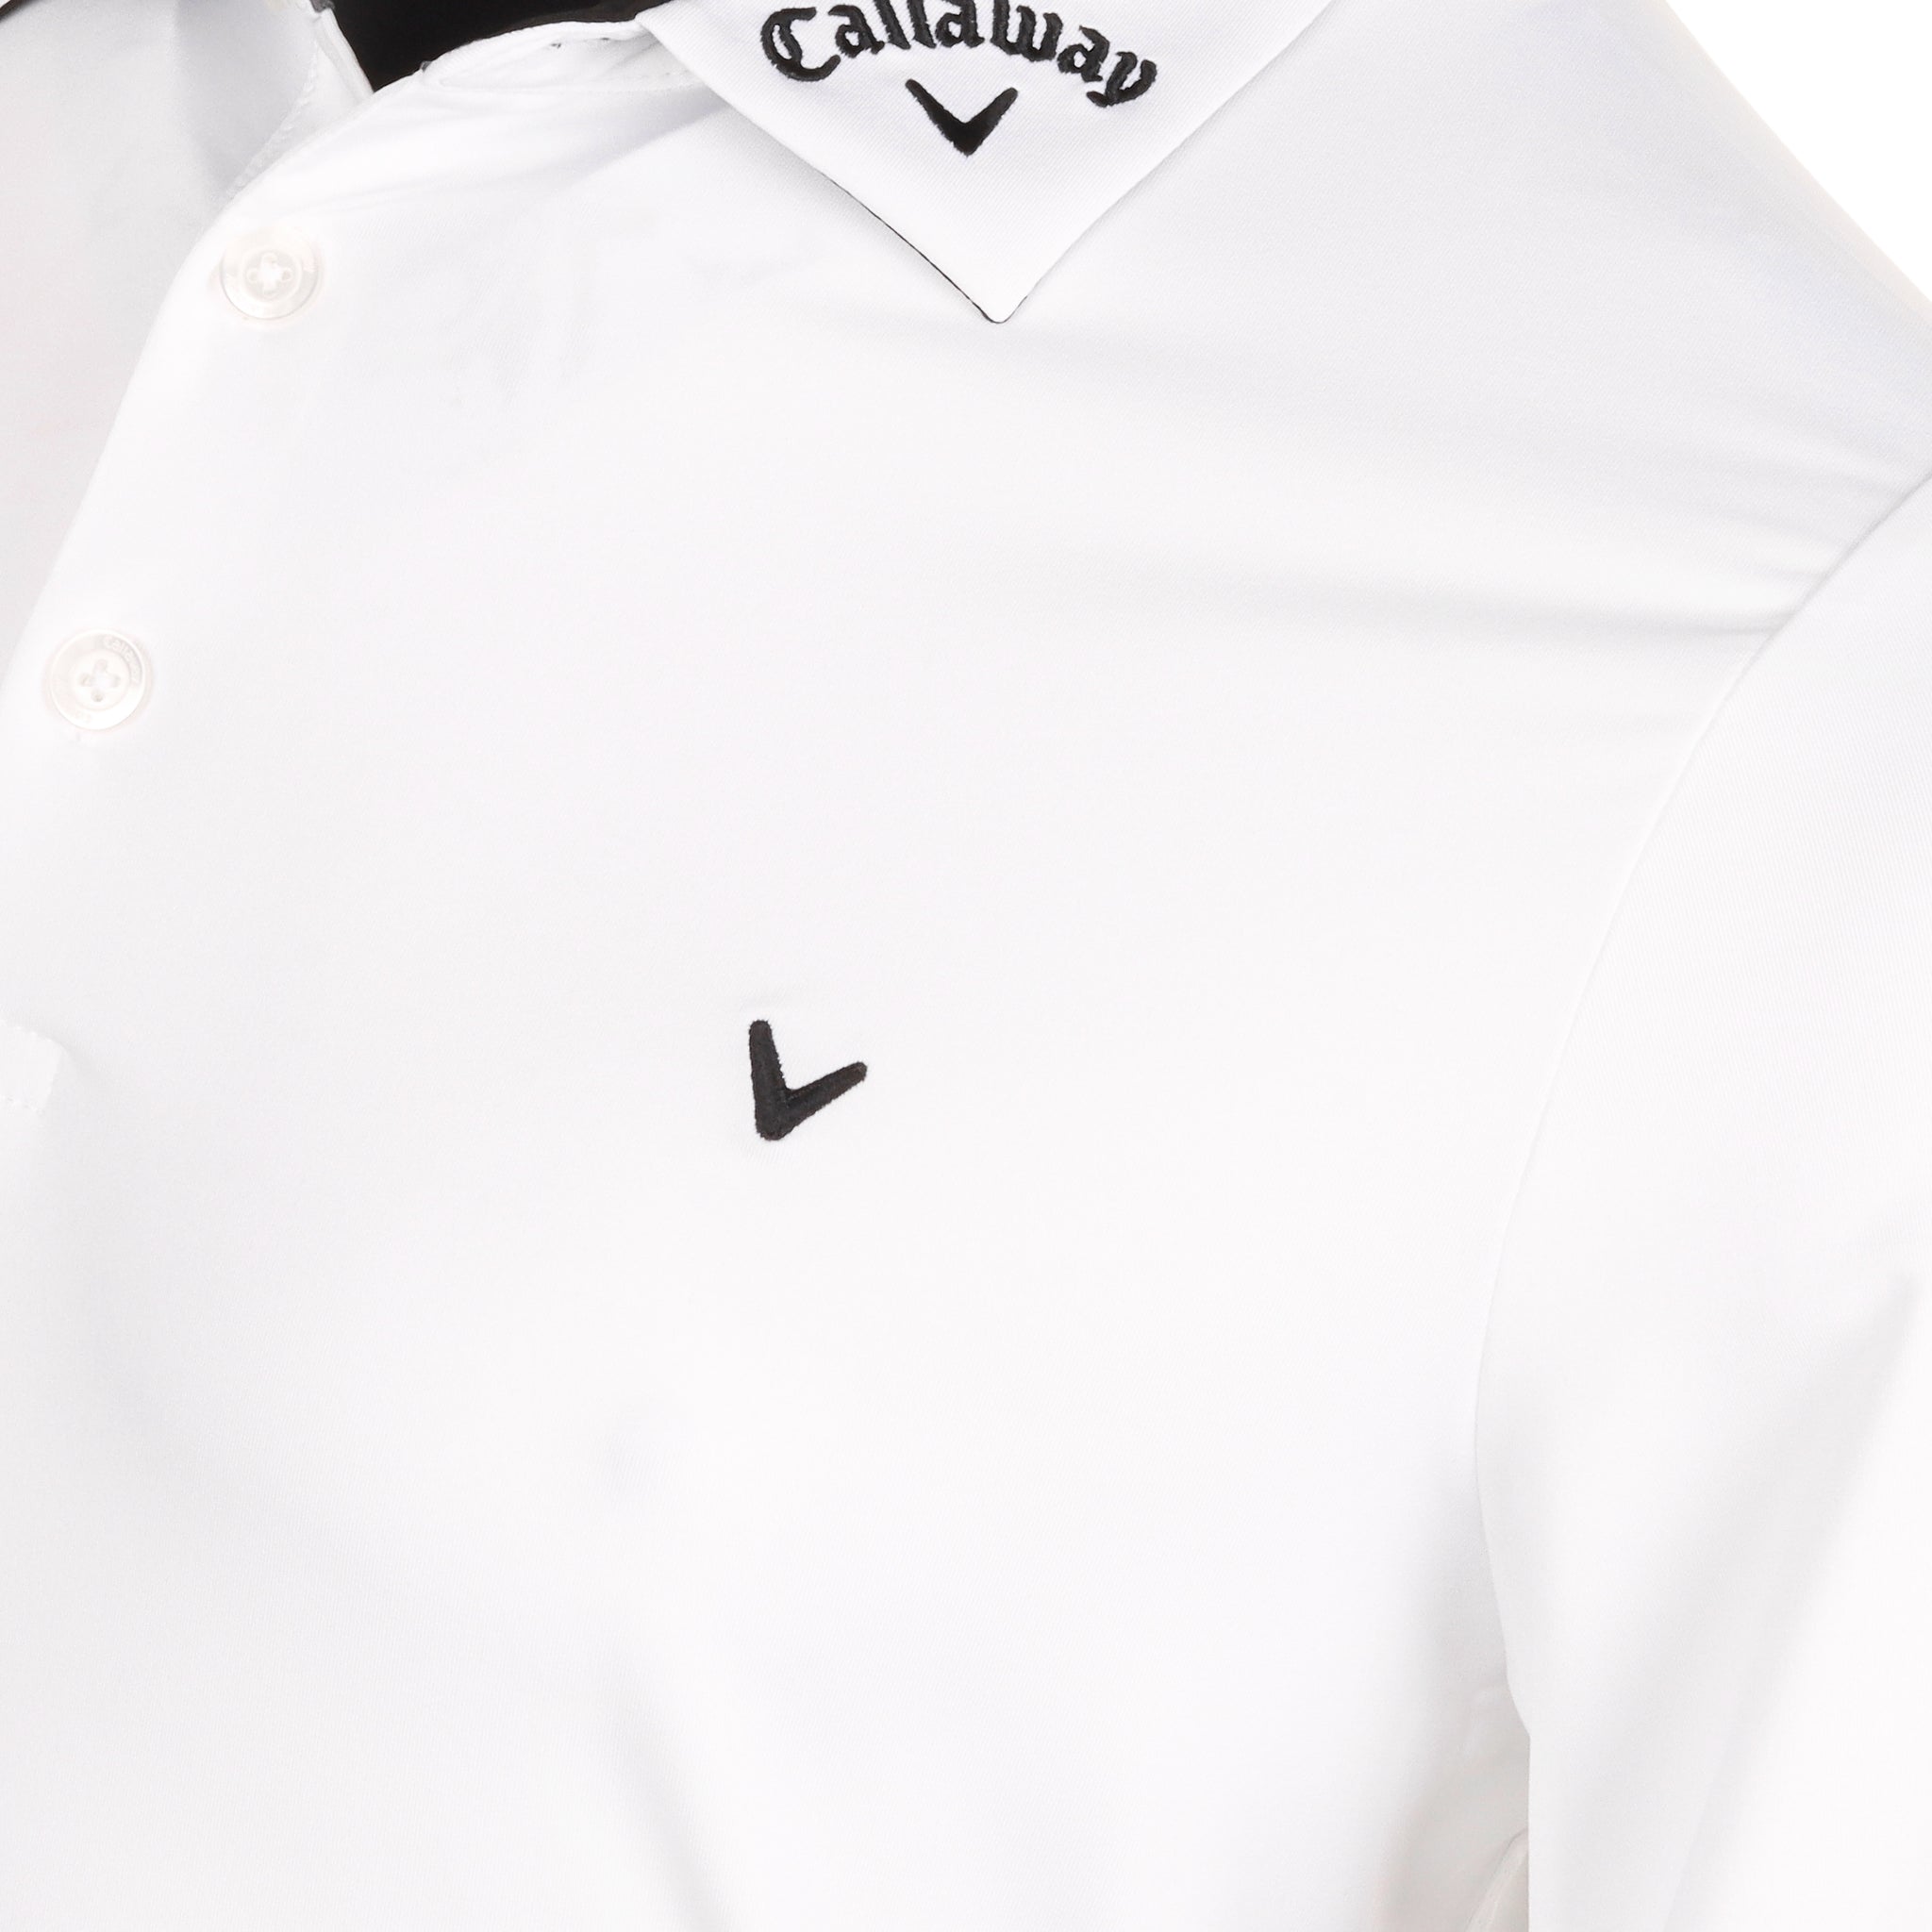 Callaway Golf 3 Chev Odyssey Shirt